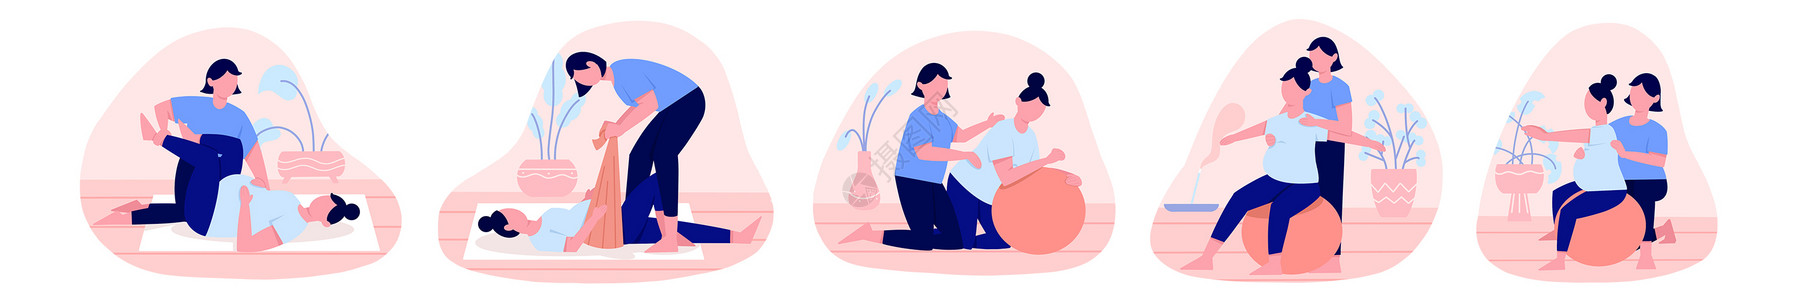 粉蓝色扁平孕妇产前护理训练瑜伽人物主题场景元素高清图片